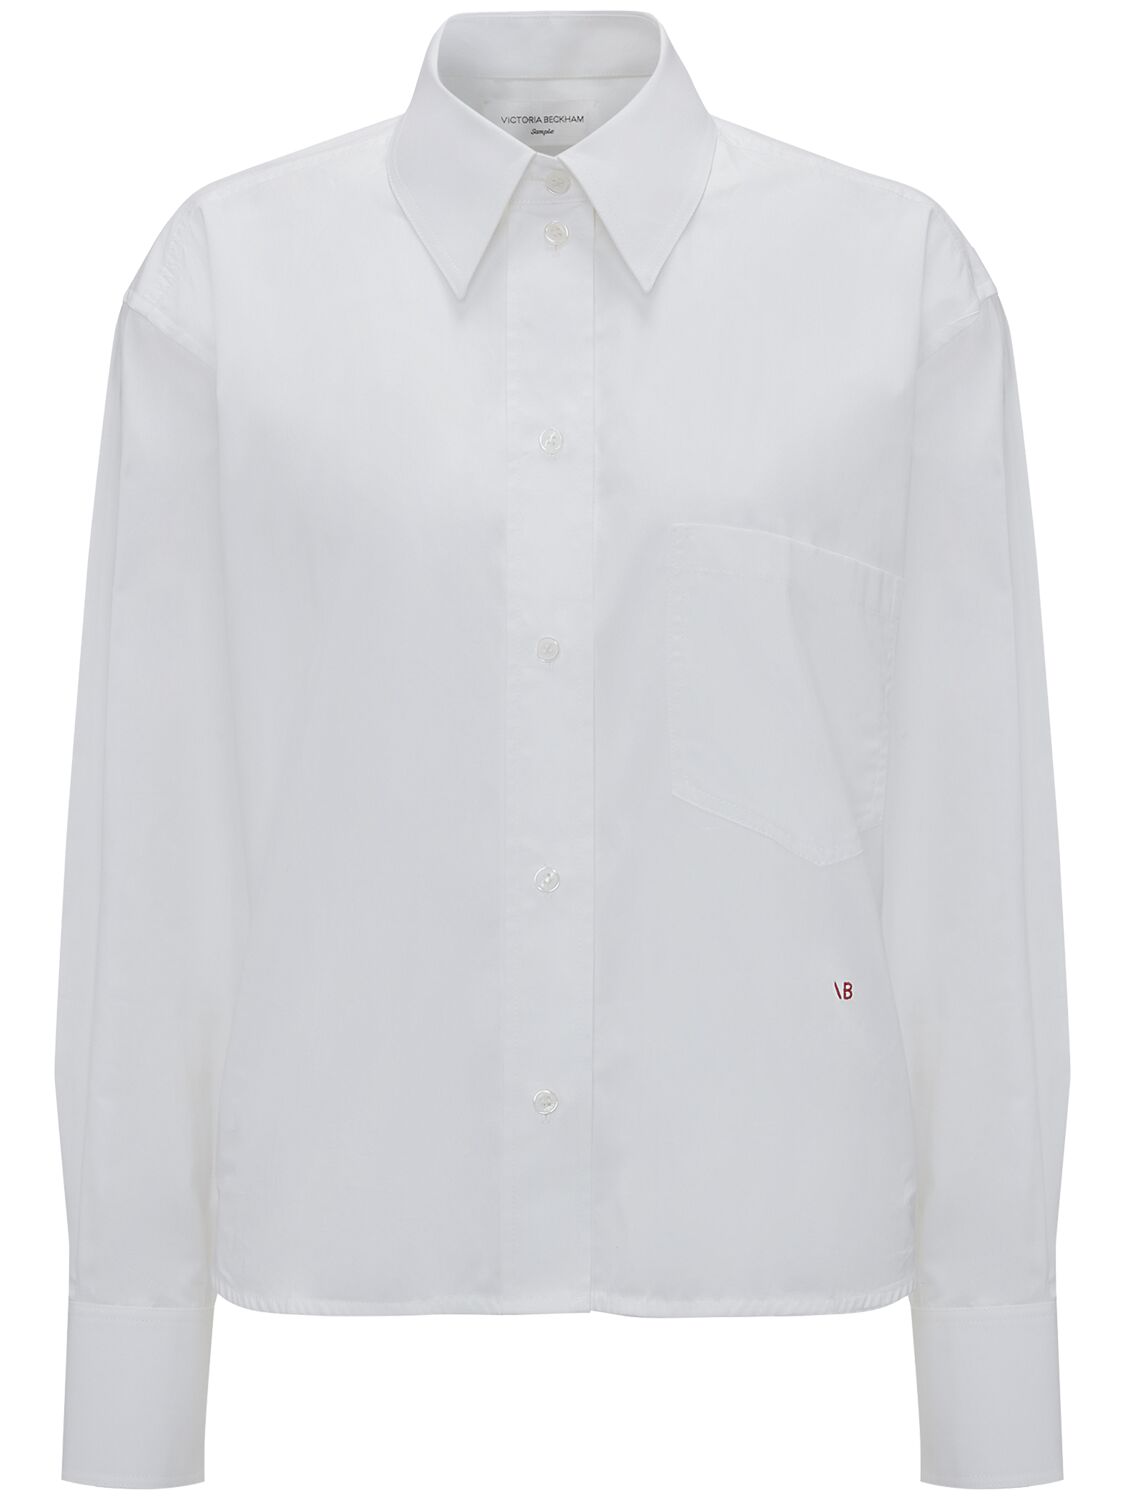 Victoria Beckham Mens Oversize Cotton Poplin Shirt In White